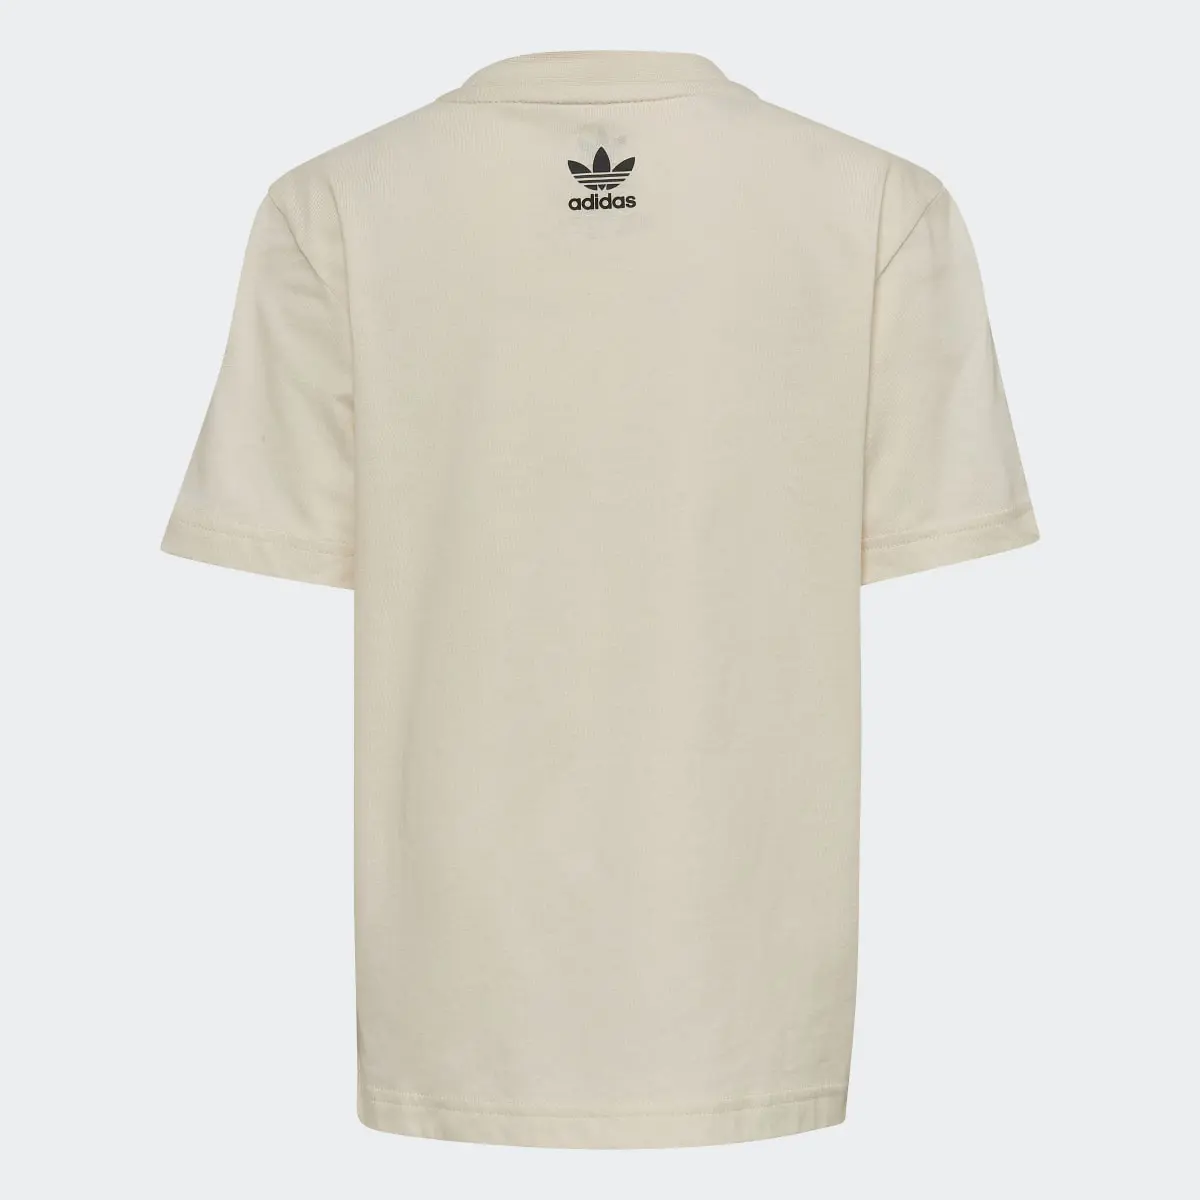 Adidas Camiseta Graphic. 2